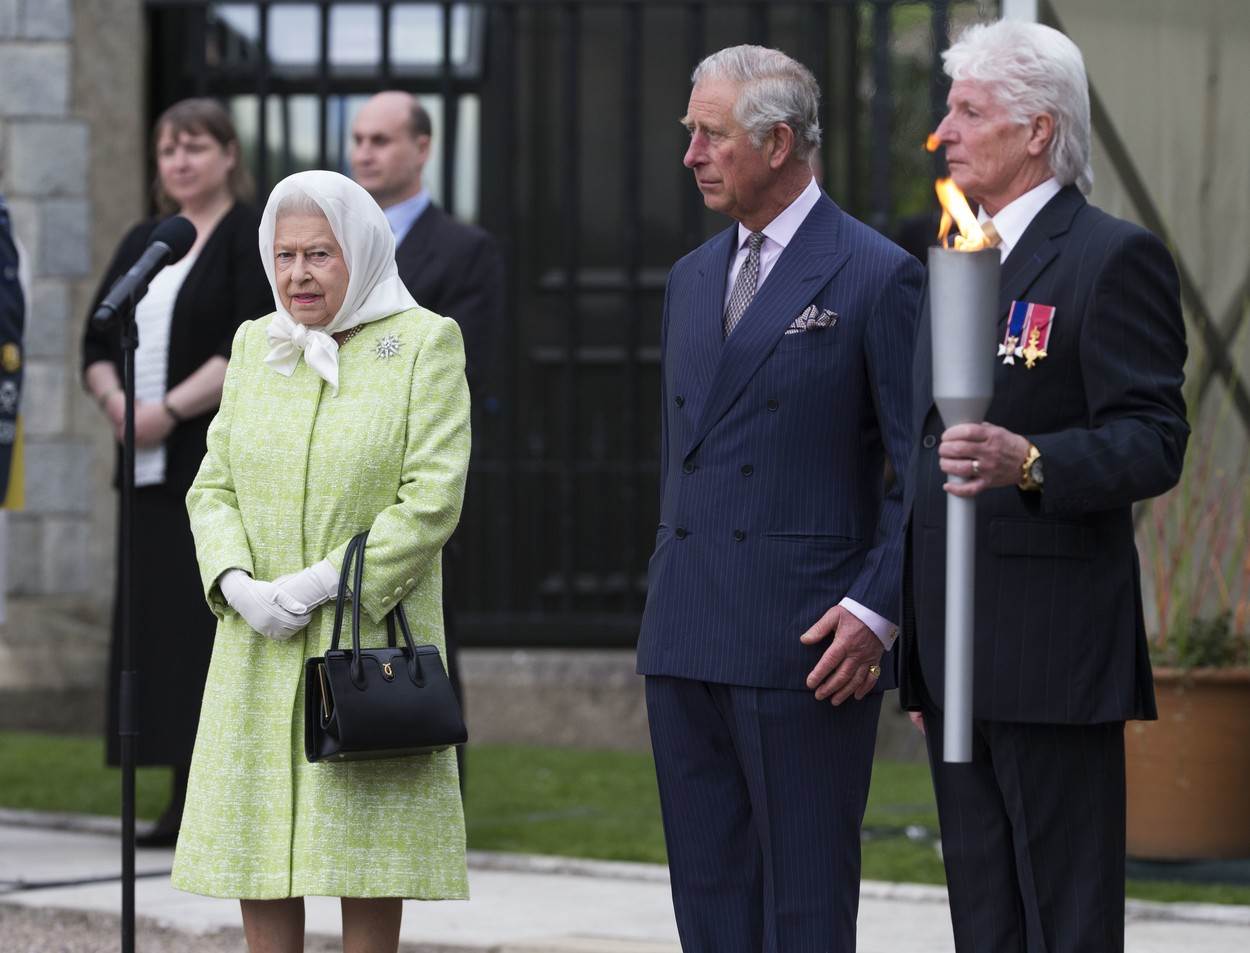 Kraljica prisiljena 'udariti' na manje važne članove kraljevske obitelji